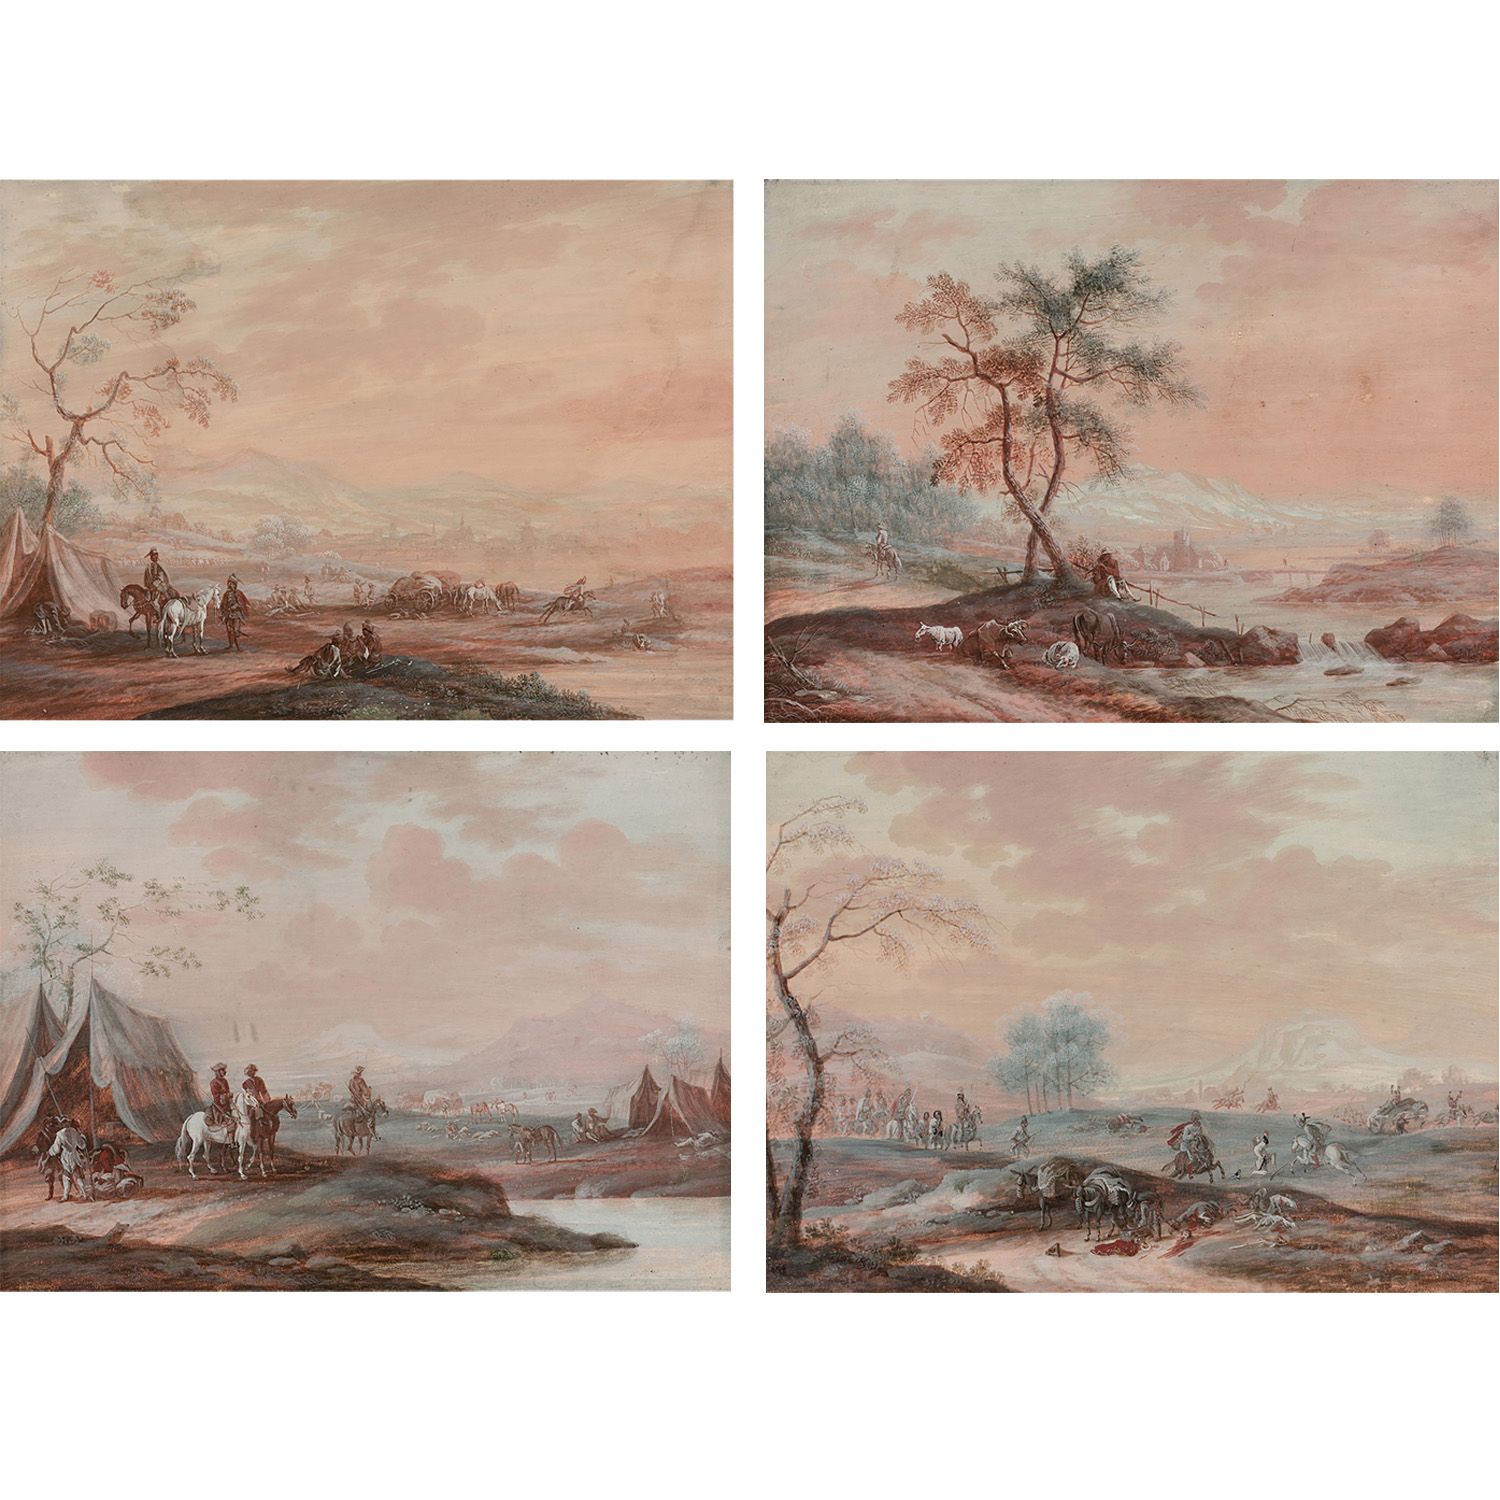 Null 归属于FRANCESCO GIUSEPPE CASANOVA (1727-1802)
三个野营和战斗的场景；一个牧师的场景
四幅水粉画的组合
污渍和湿&hellip;